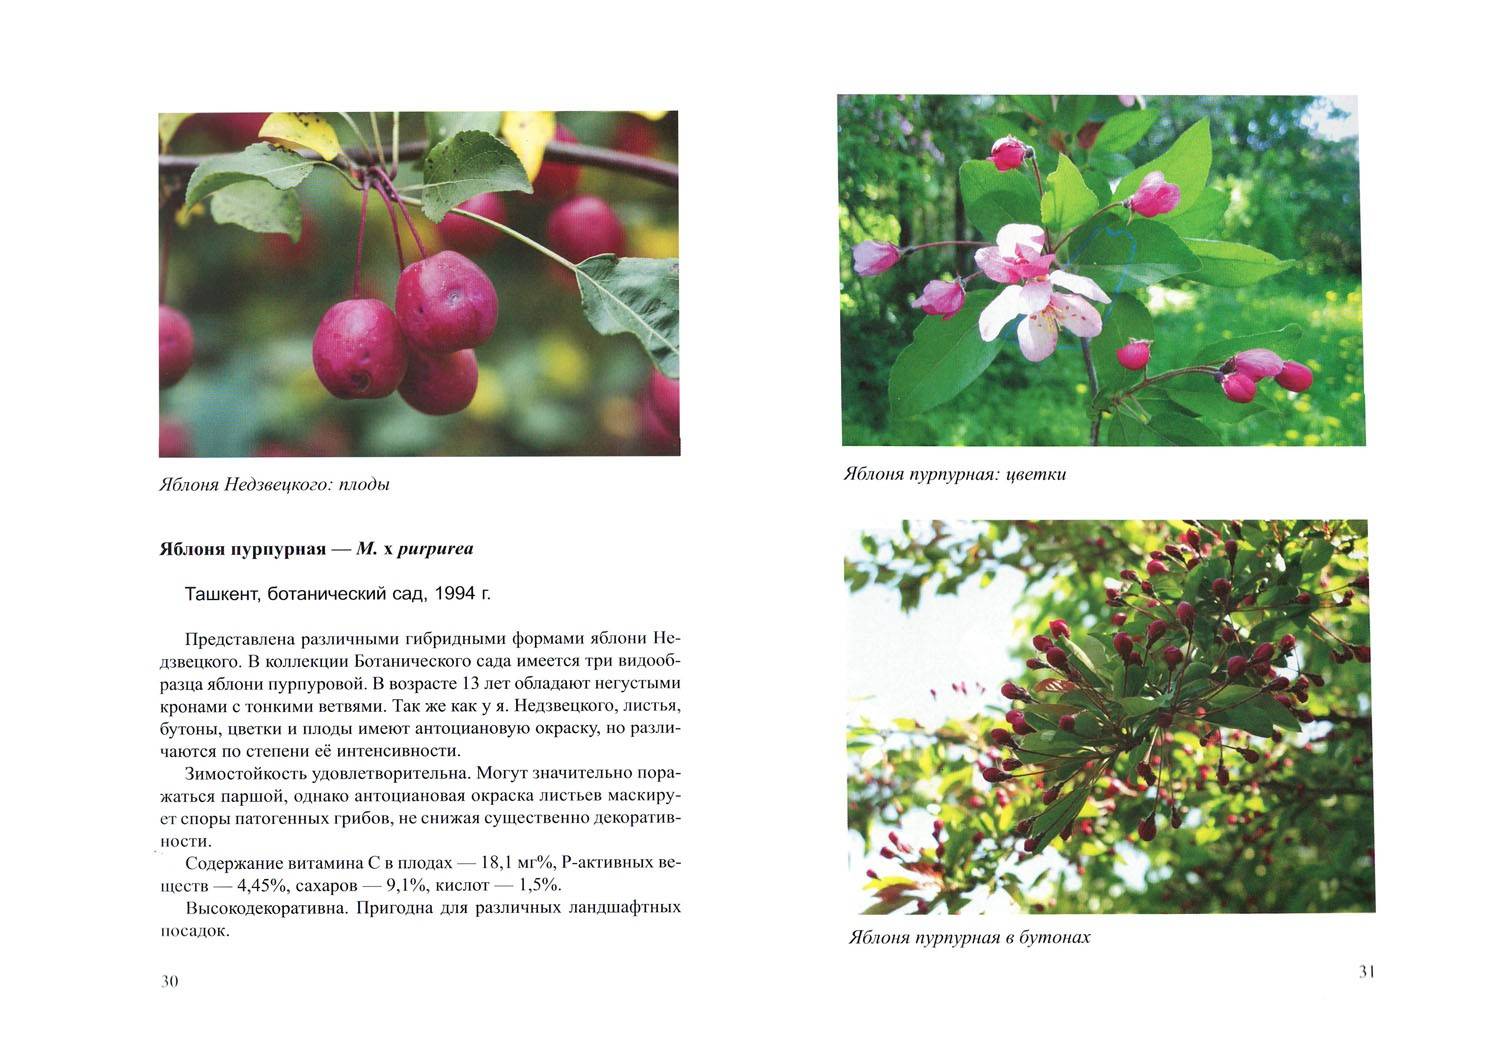 Описание декоративной яблони Недзвецкого, технология выращивания